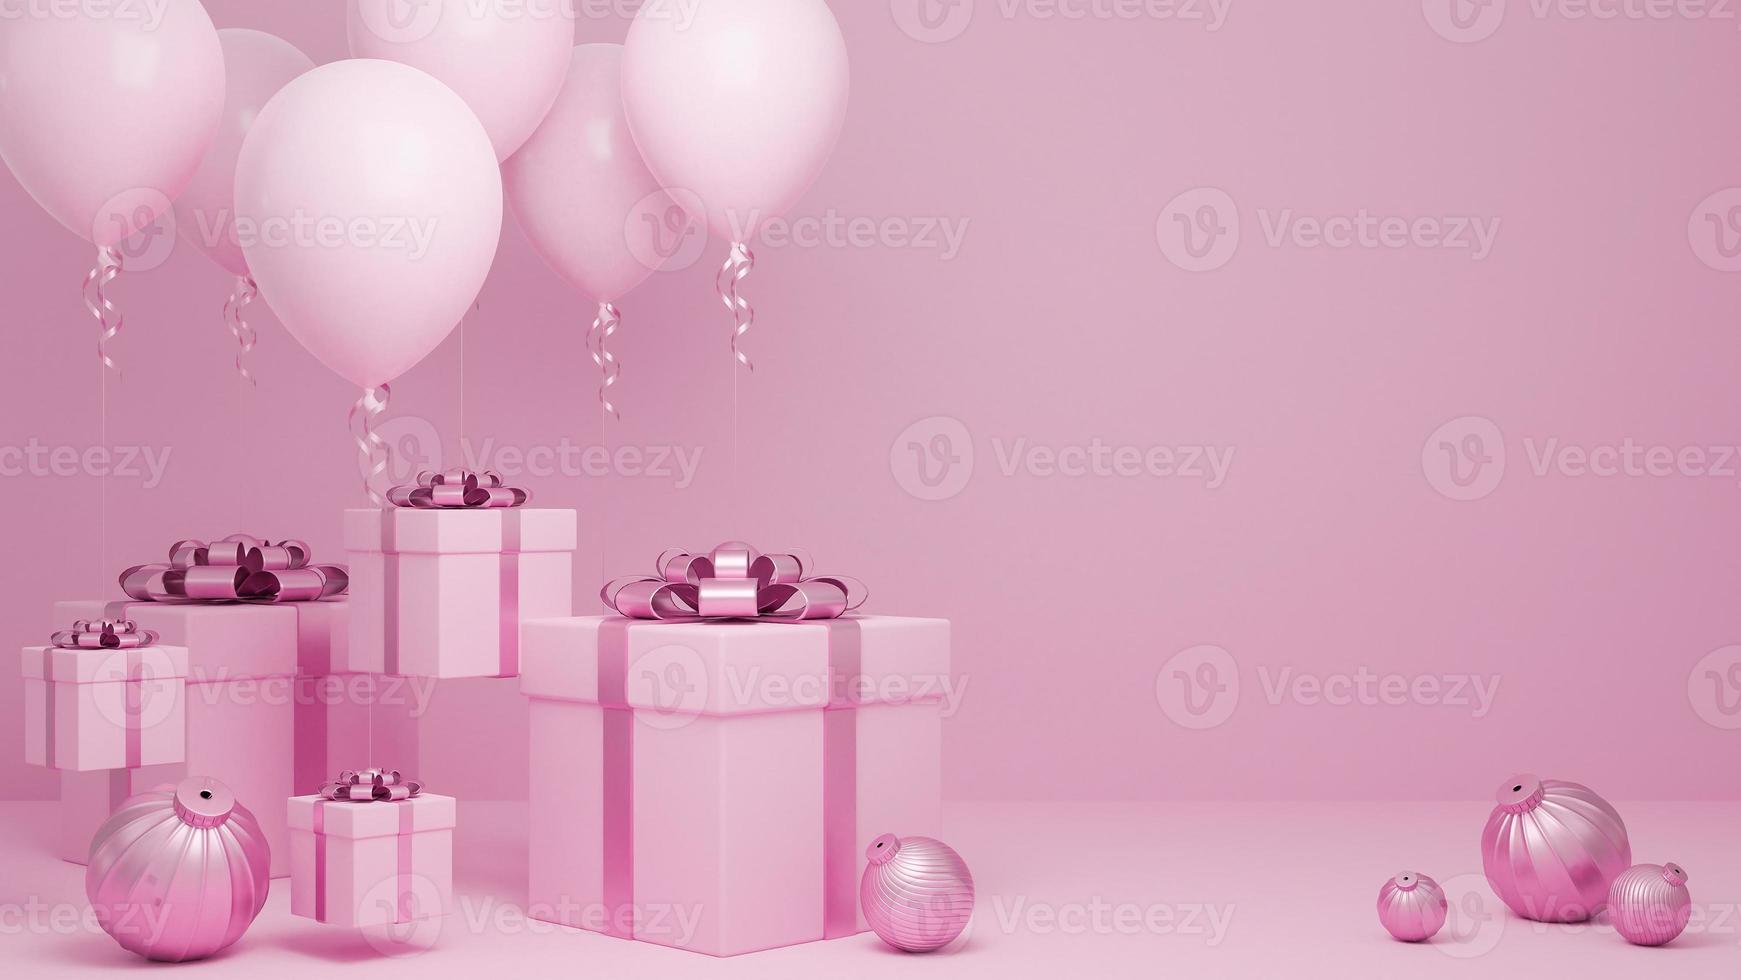 molte scatole regalo volano in aria con palloncino e ornamento rosa pastello sfondo.,Natale e felice anno nuovo concetto di sfondo.,Modello 3d e illustrazione. foto